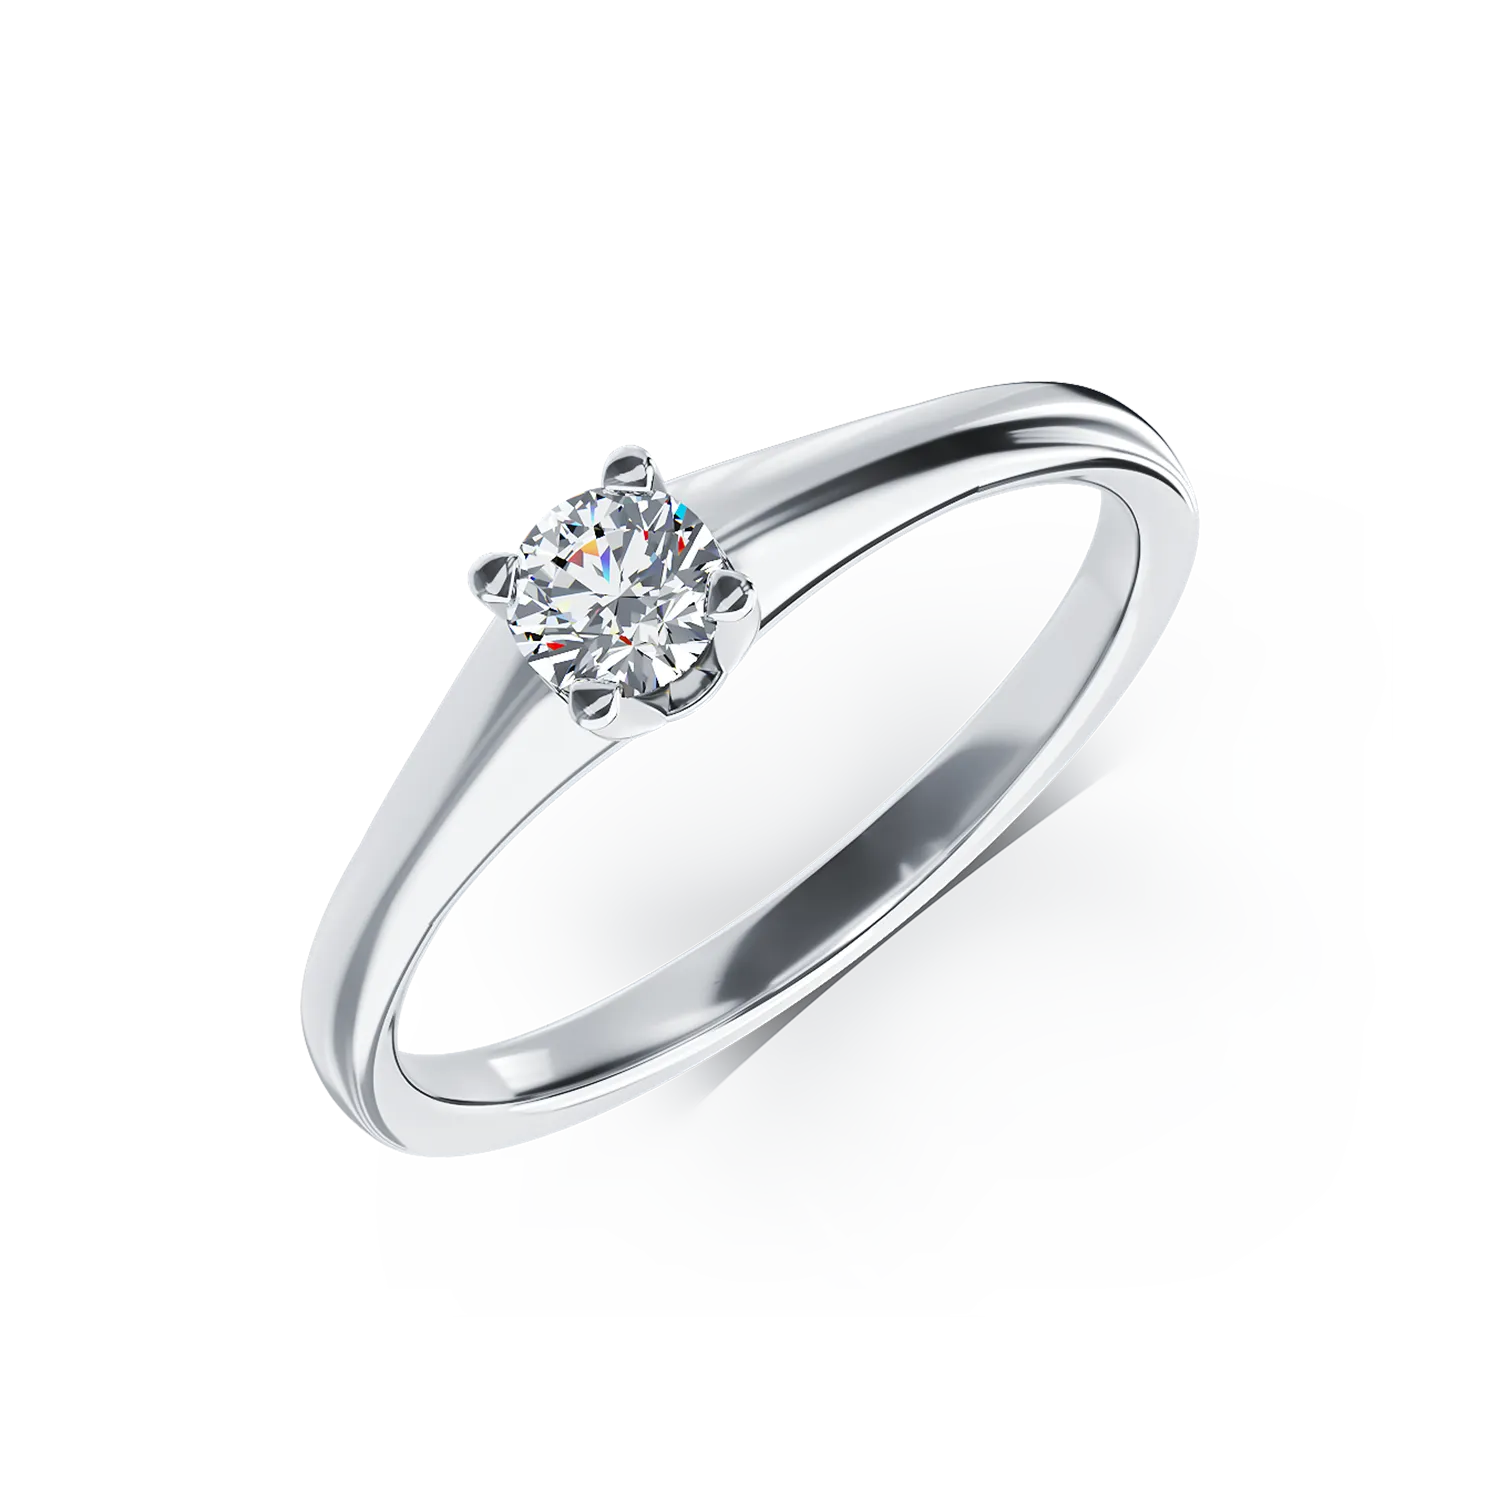 Eljegyzési gyűrű 18K-os fehér aranyból 0,2ct gyémánttal. Gramm: 2,40